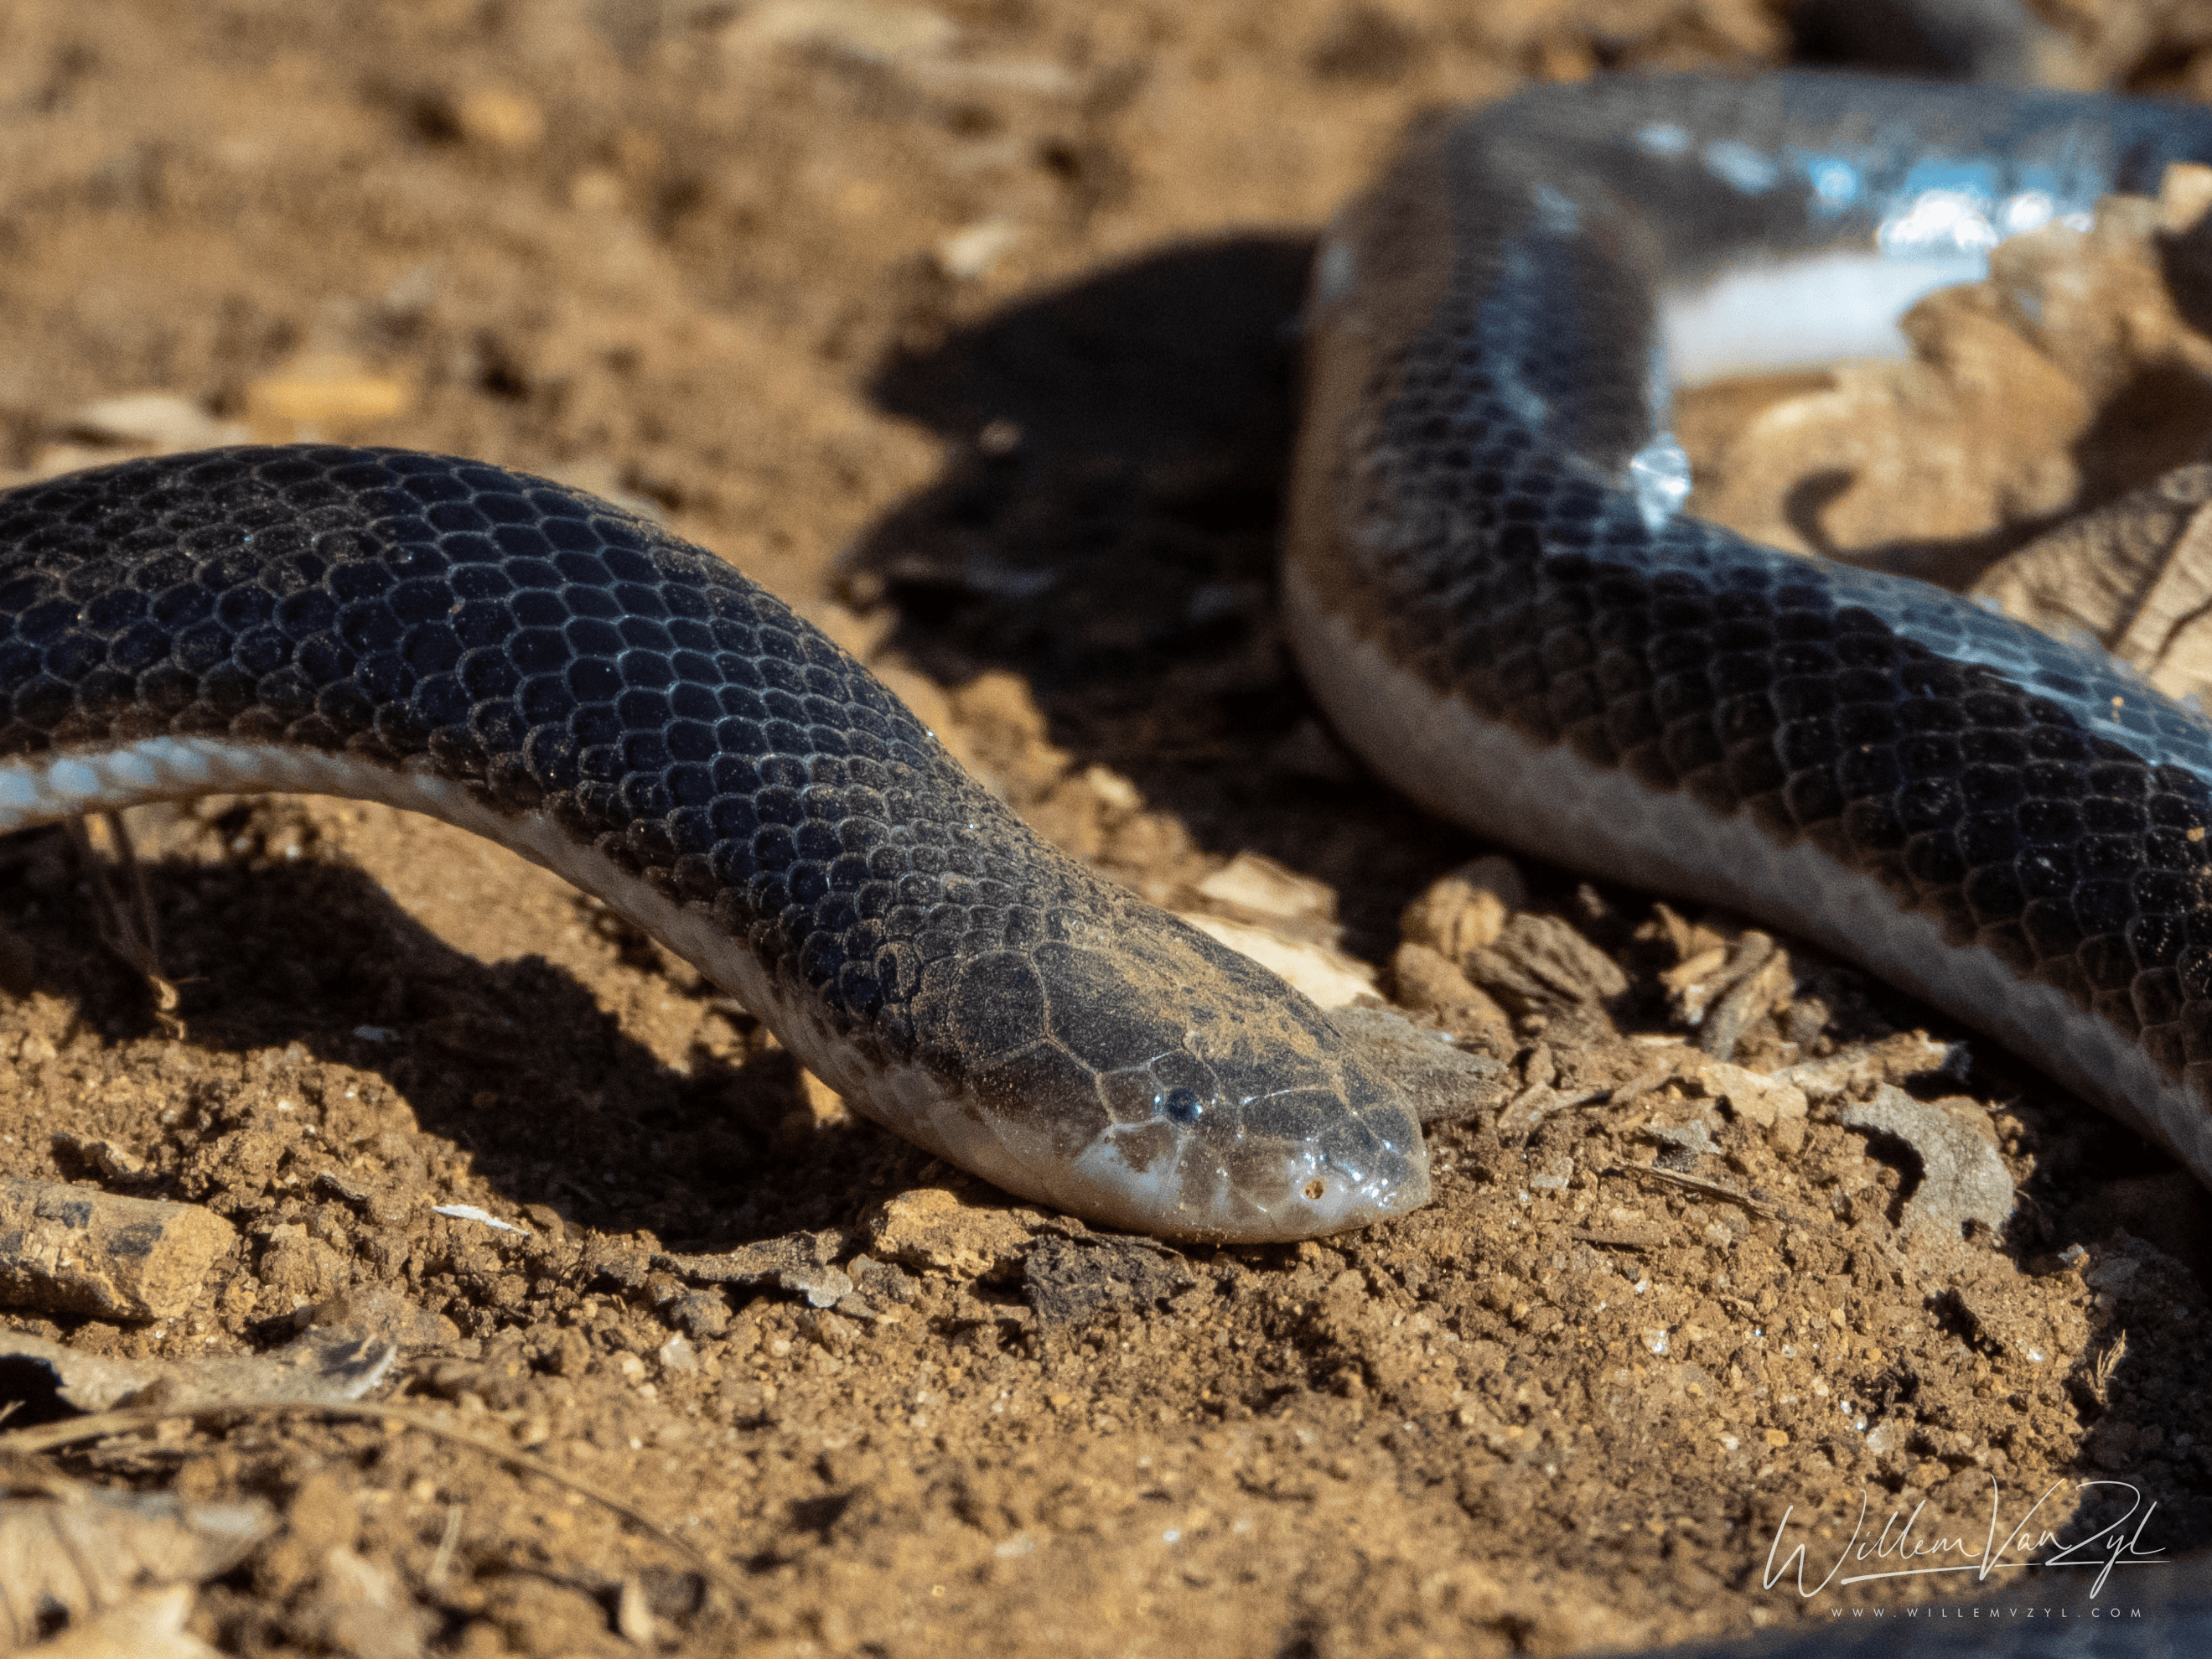 Bibron’s Stiletto Snake (Atractaspis bibronii)